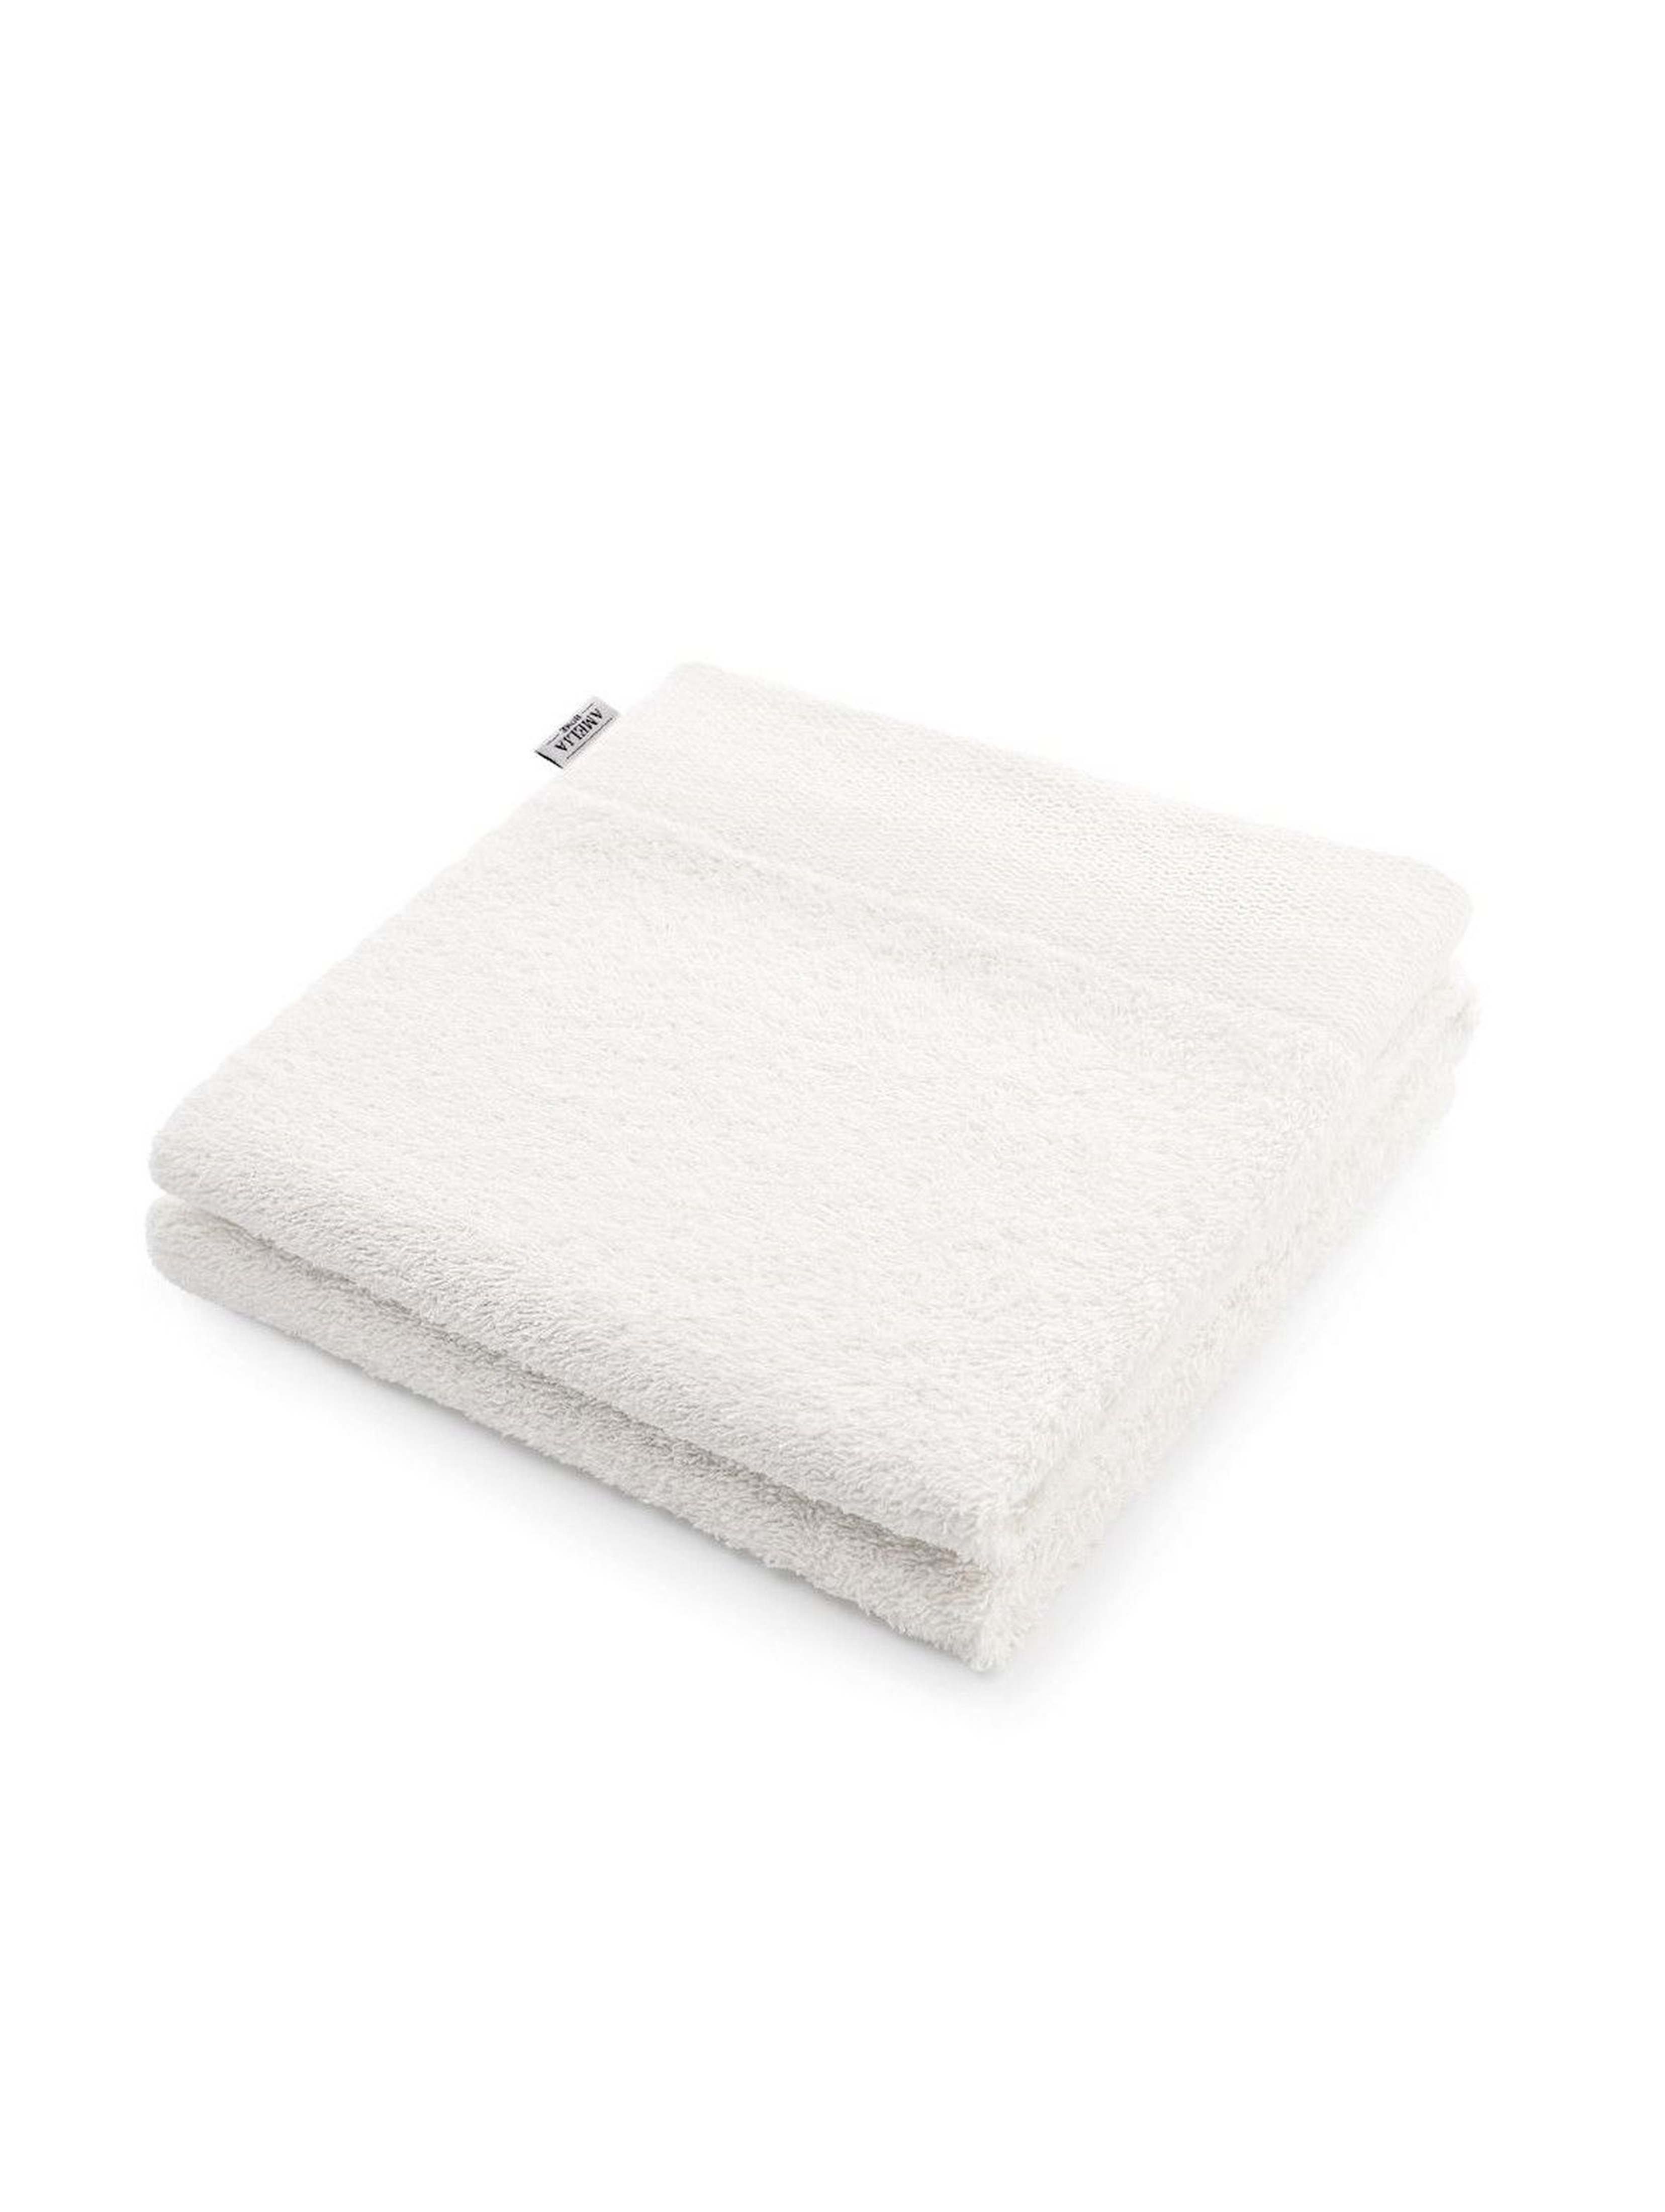 Ręcznik bawełniany AmeliaHome biały - 70x140cm